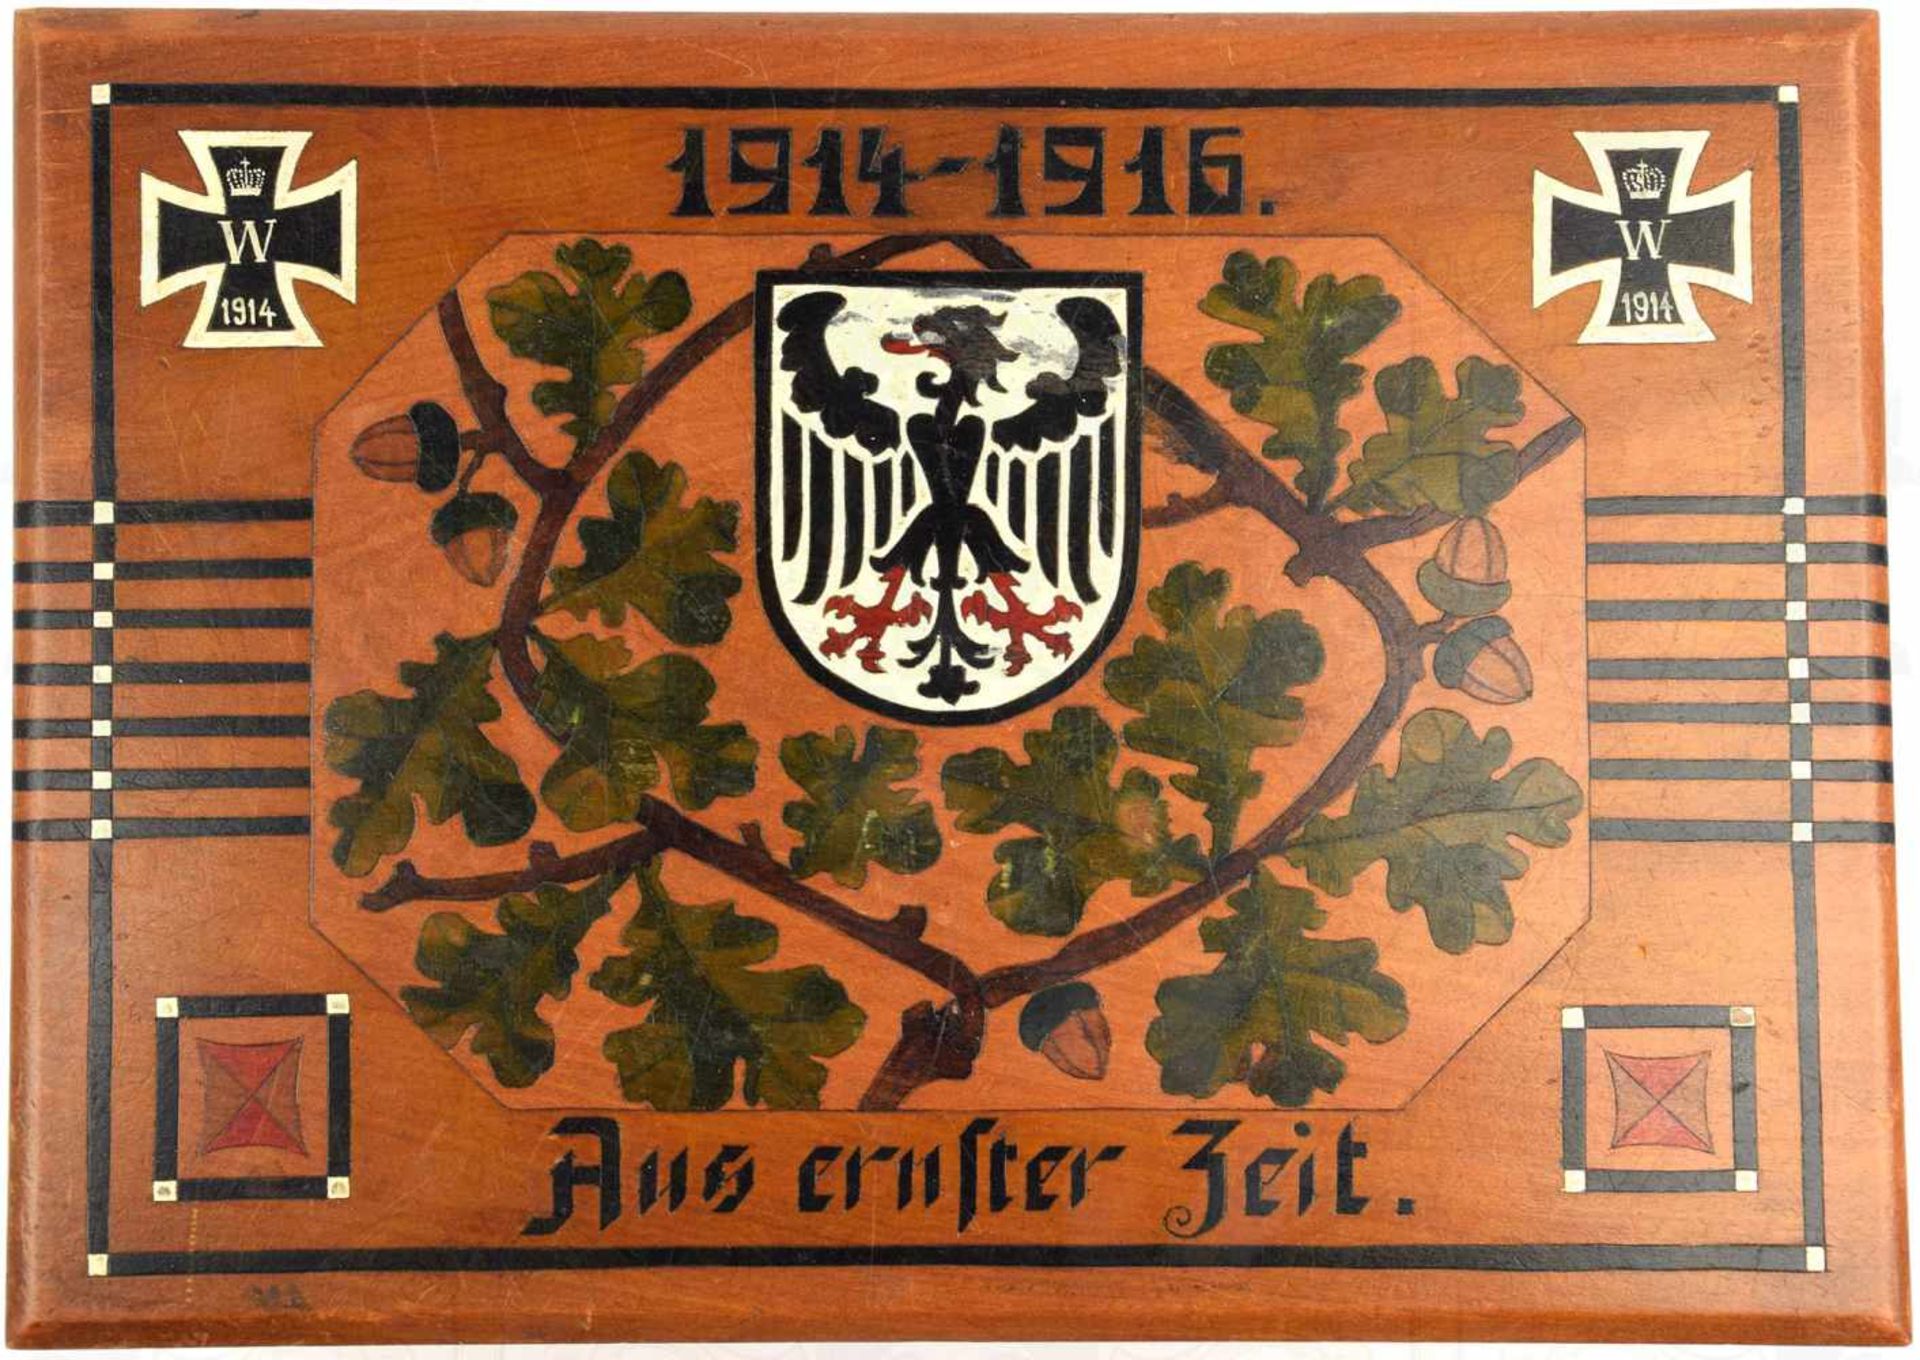 PATRIOTISCHE SCHATULLE, Holz, Deckel m. Intarsien, 2 EK 1914, Adler im Wappenschild u. Eichenbrüche, - Bild 2 aus 3